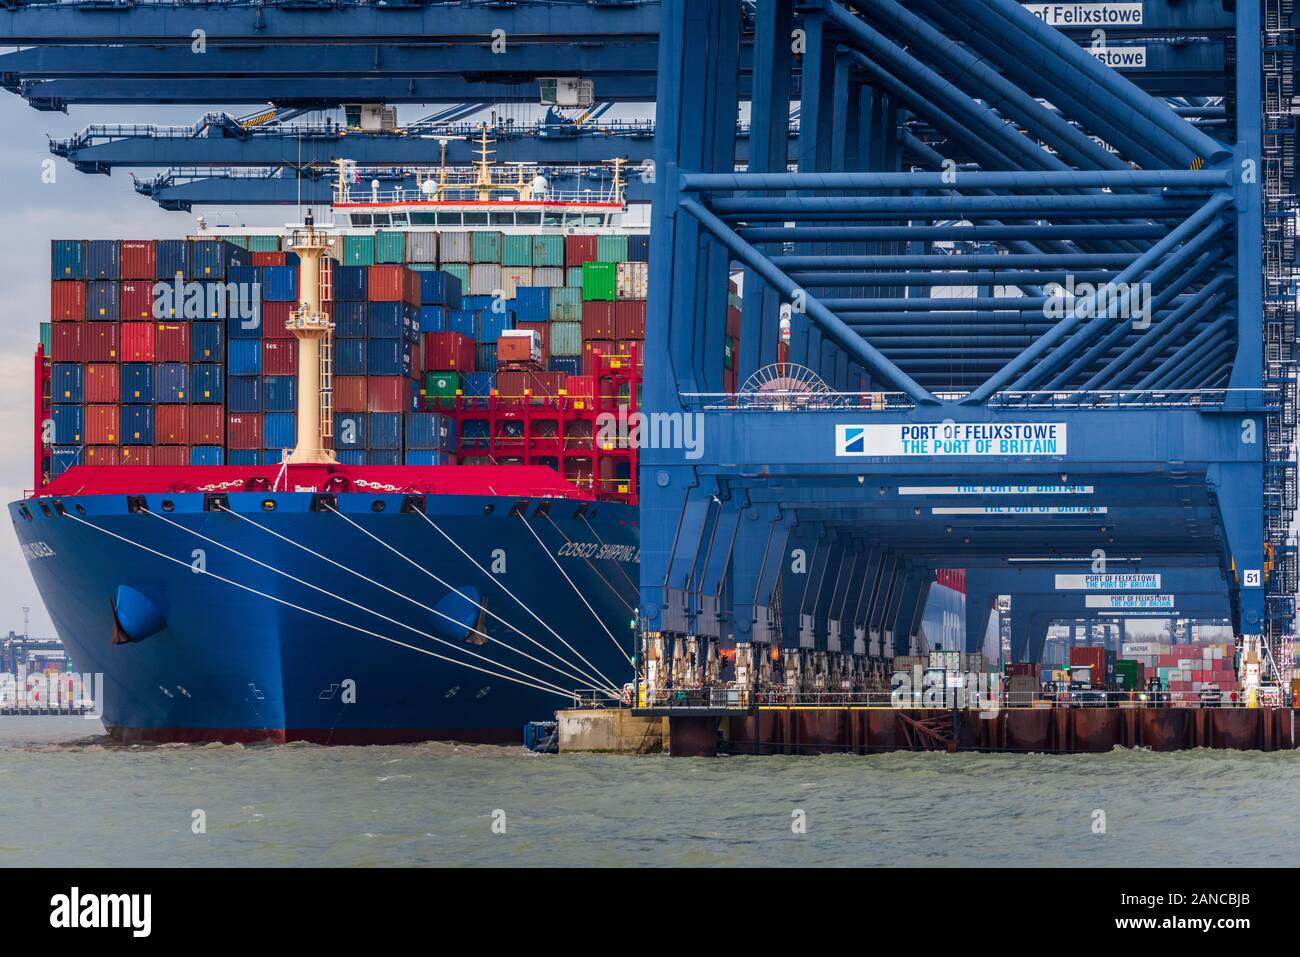 COSCO Container nave Azalea a Felixstowe Port Regno Unito - COSCO China Ocean Shipping Company, è il più grande del mondo di portacontainer operatore. Foto Stock